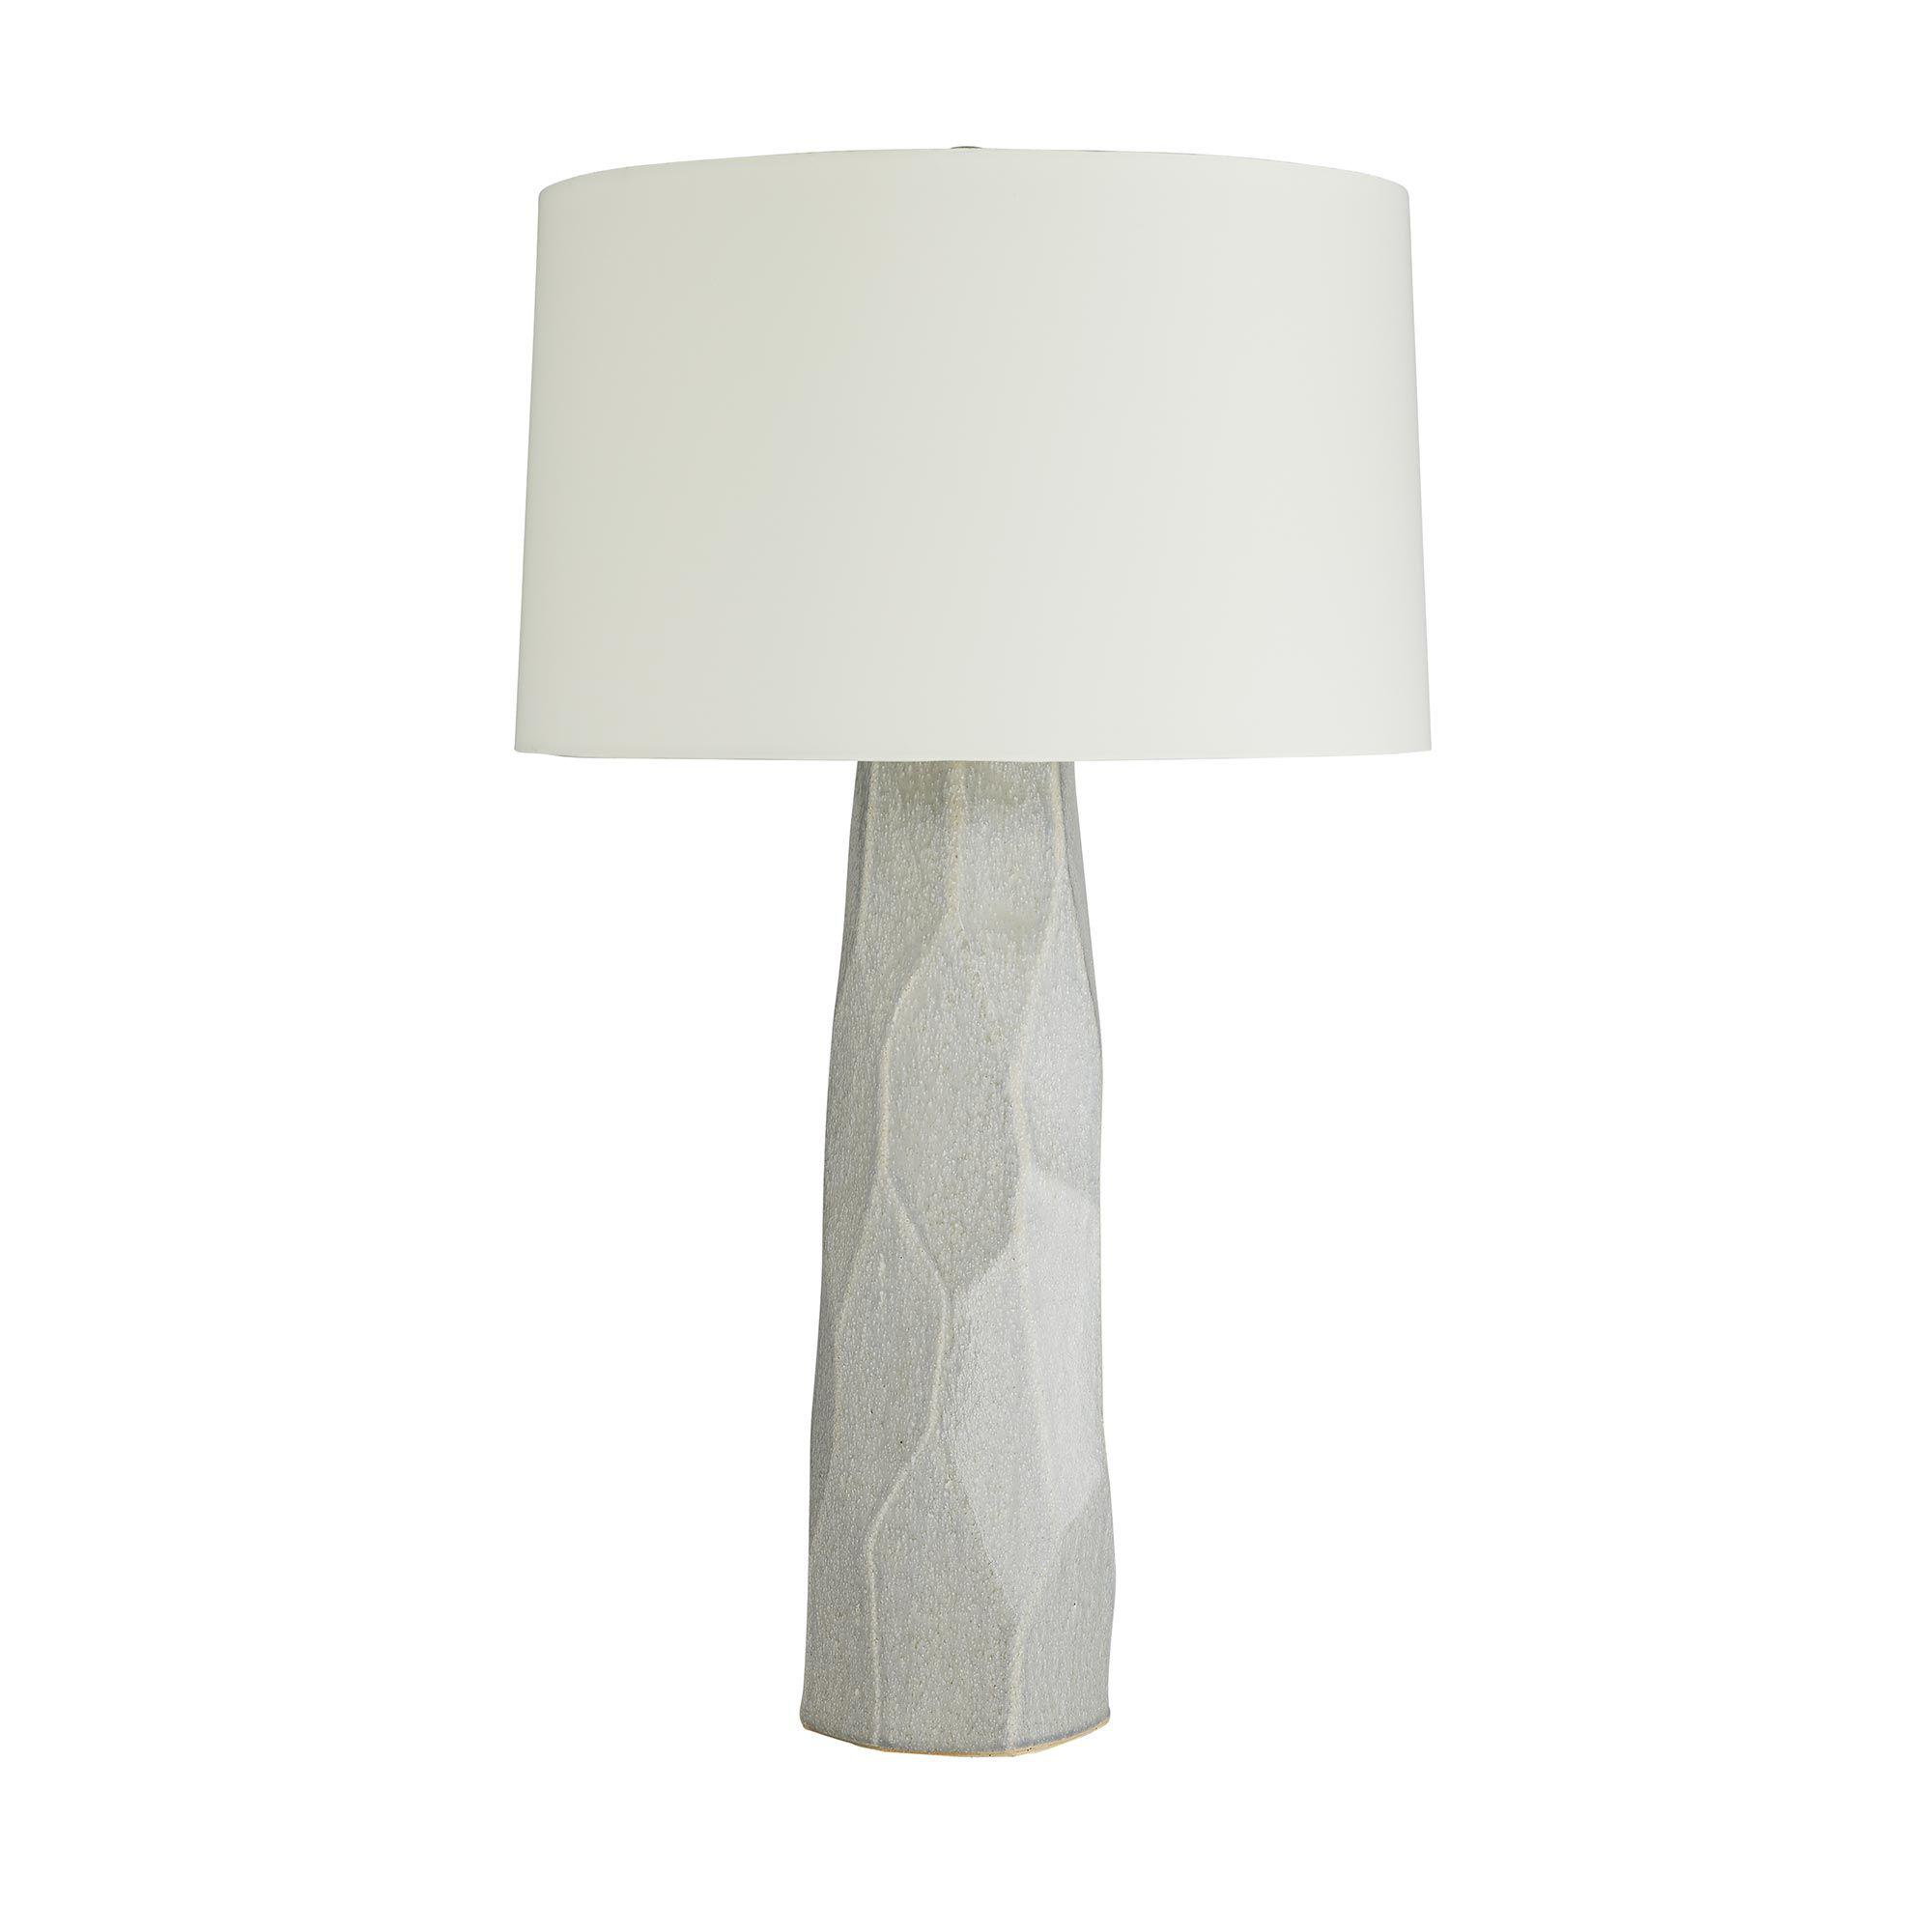 Купить Настольная лампа Townsen Lamp в интернет-магазине roooms.ru